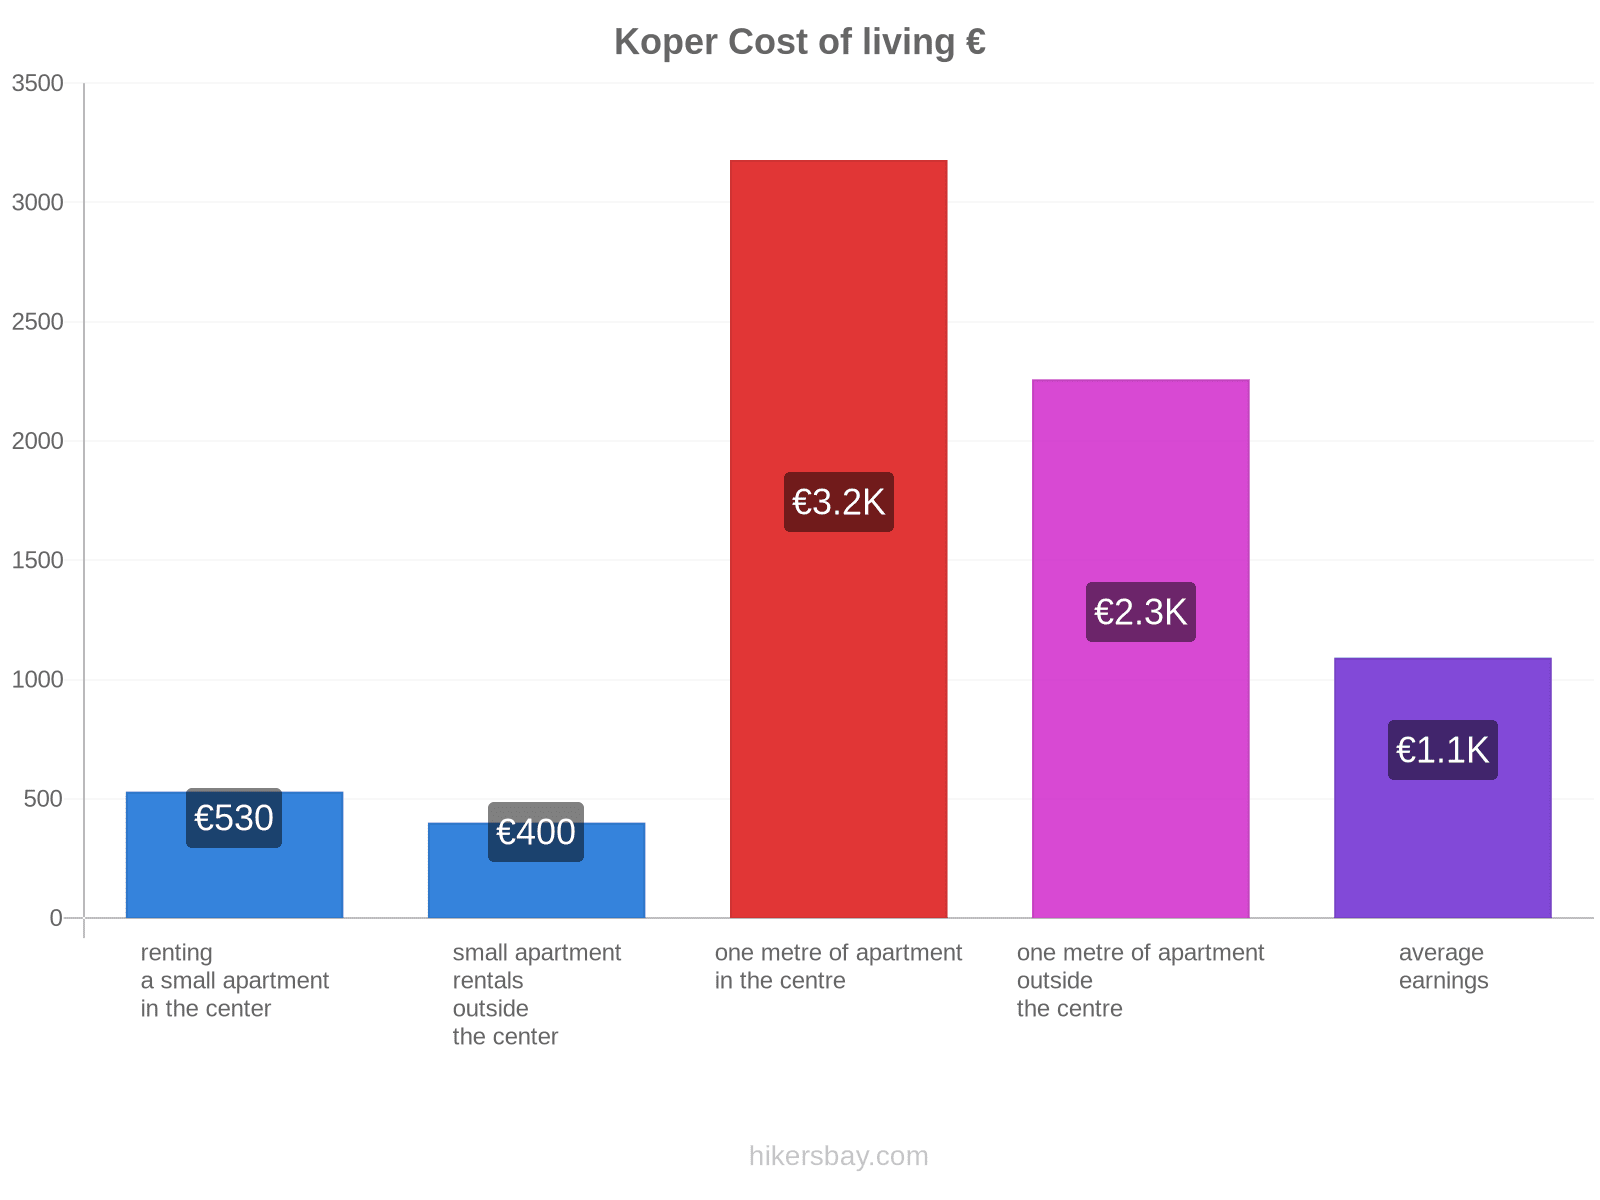 Koper cost of living hikersbay.com